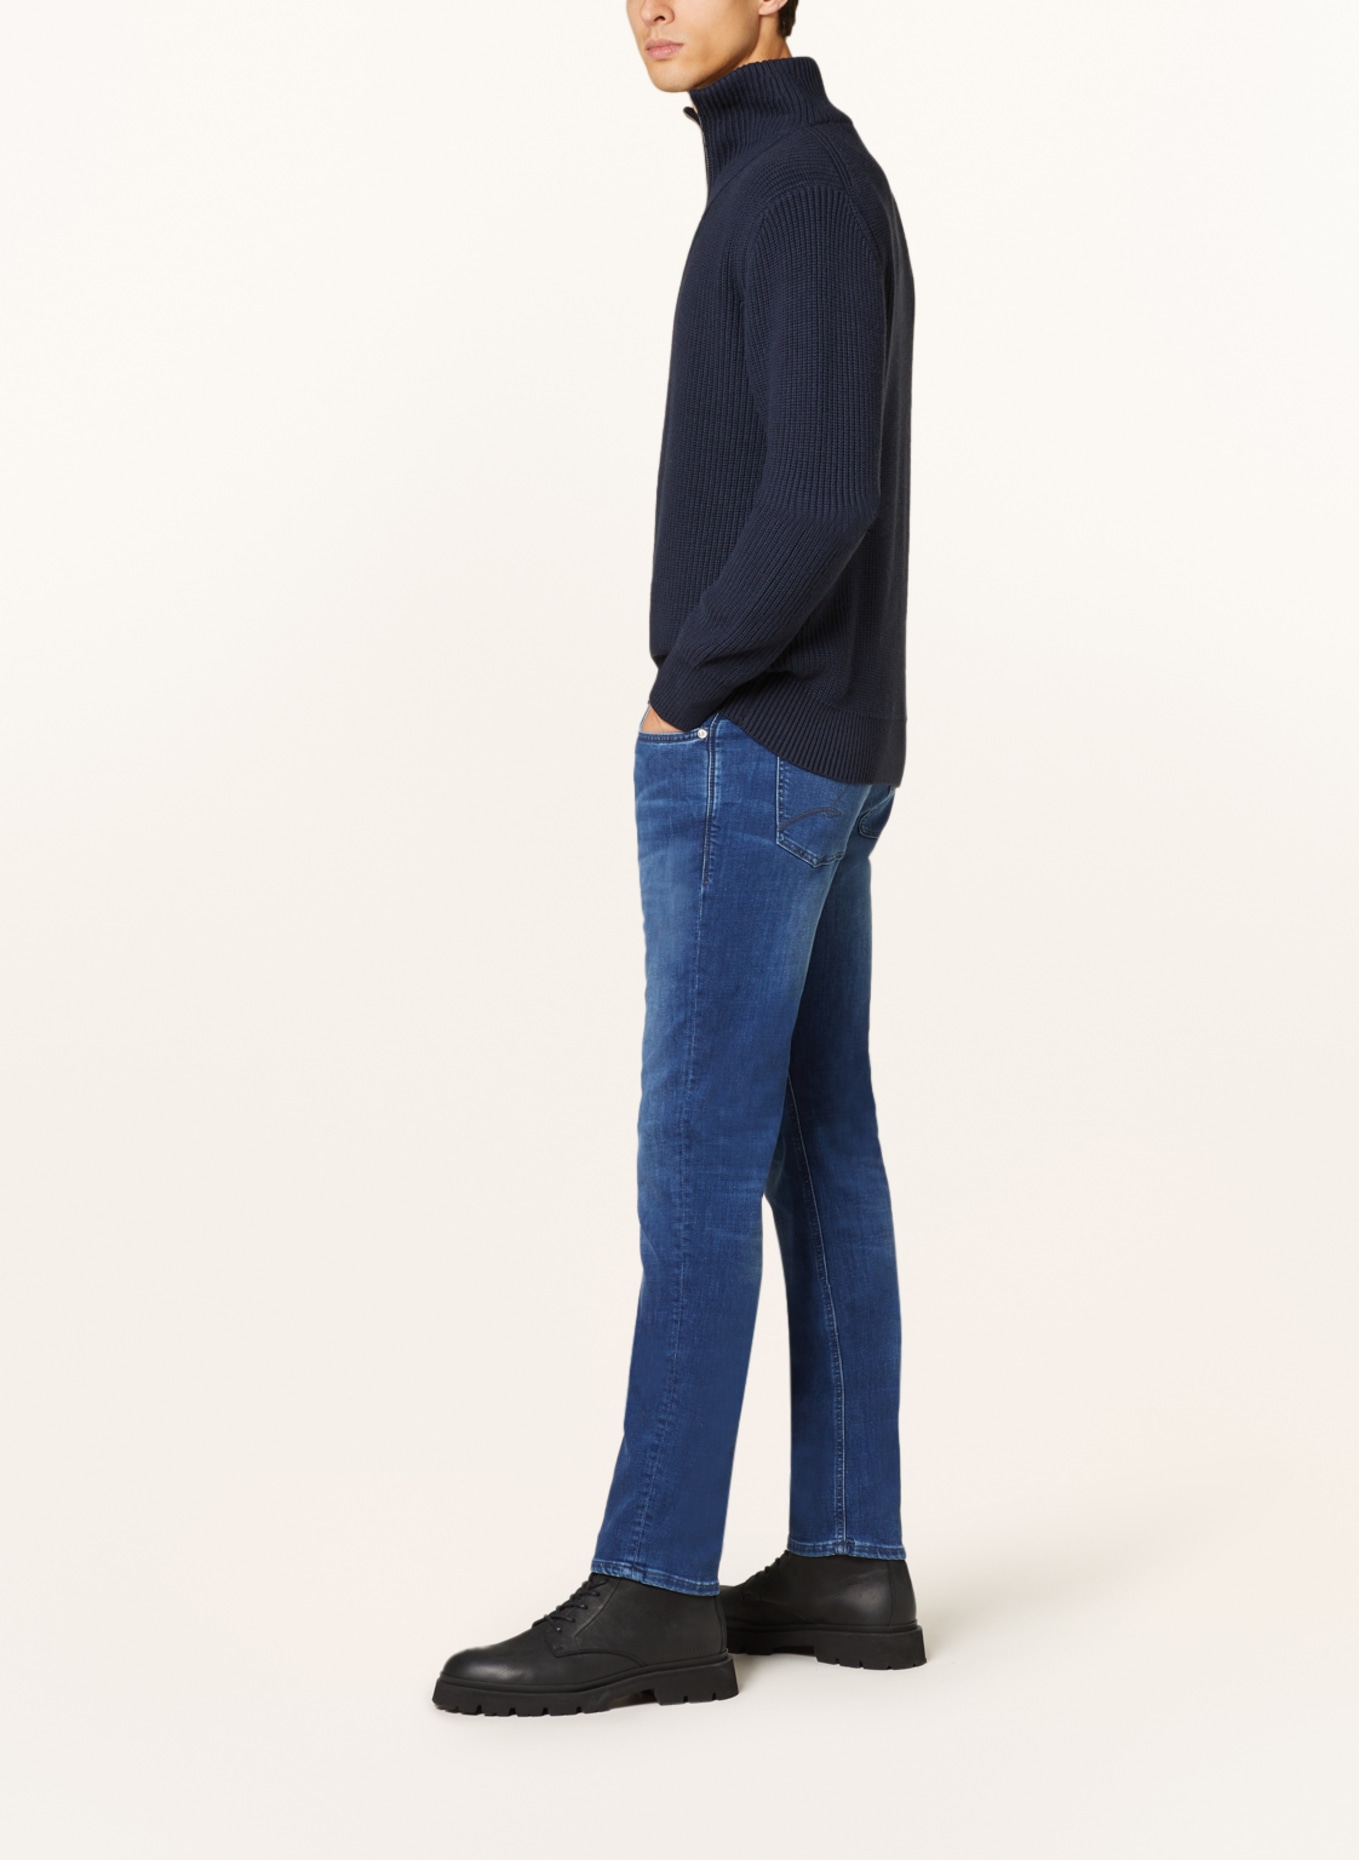 BALDESSARINI Jeans Regular Fit, Farbe: 6825 blue used whisker (Bild 4)